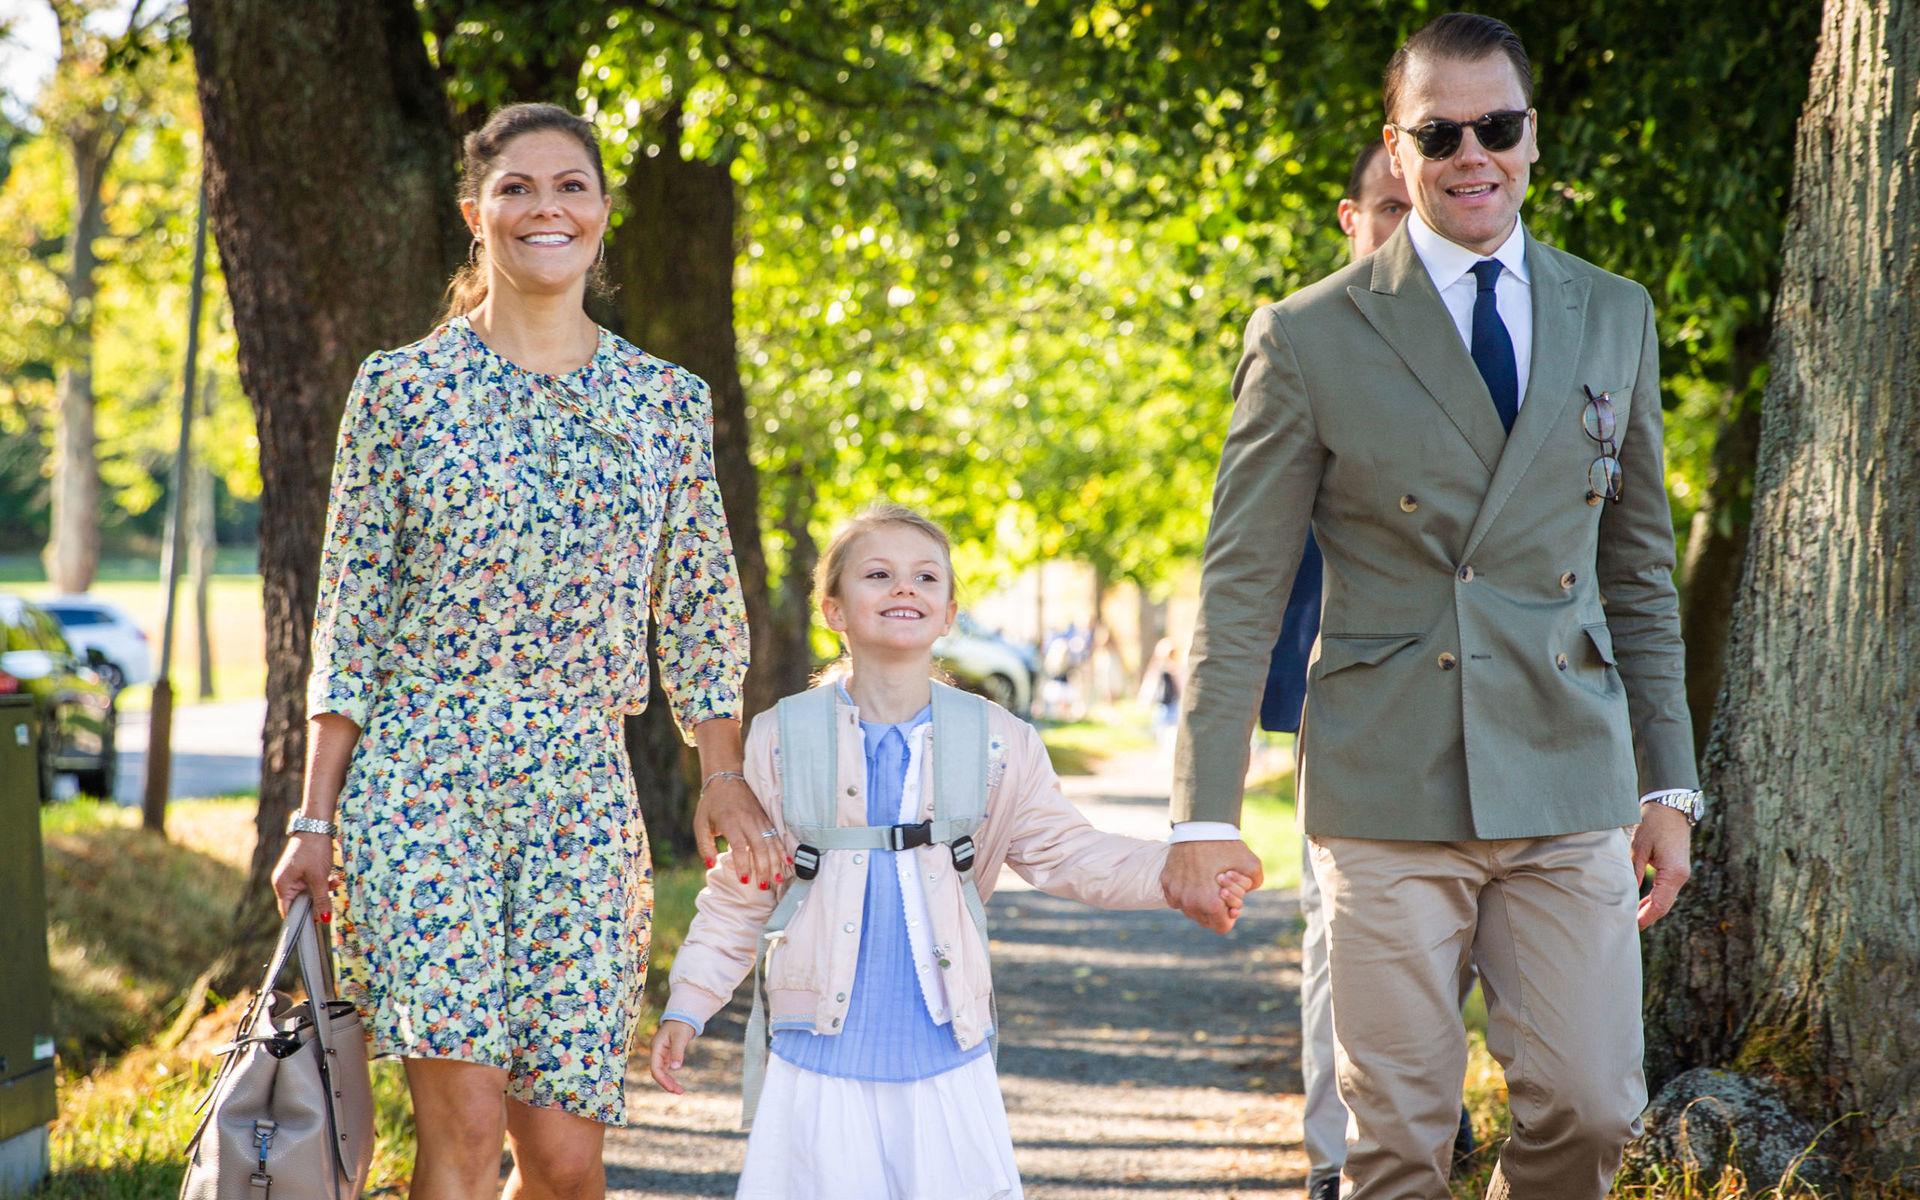 Den 21 augusti 2018 började prinsessan Estelle i förskoleklass på Campus Manillas grundskola på Djurgården i Stockholm. Prinsessan följdes till skolstarten av kronprinsessan Victoria och prins Daniel.